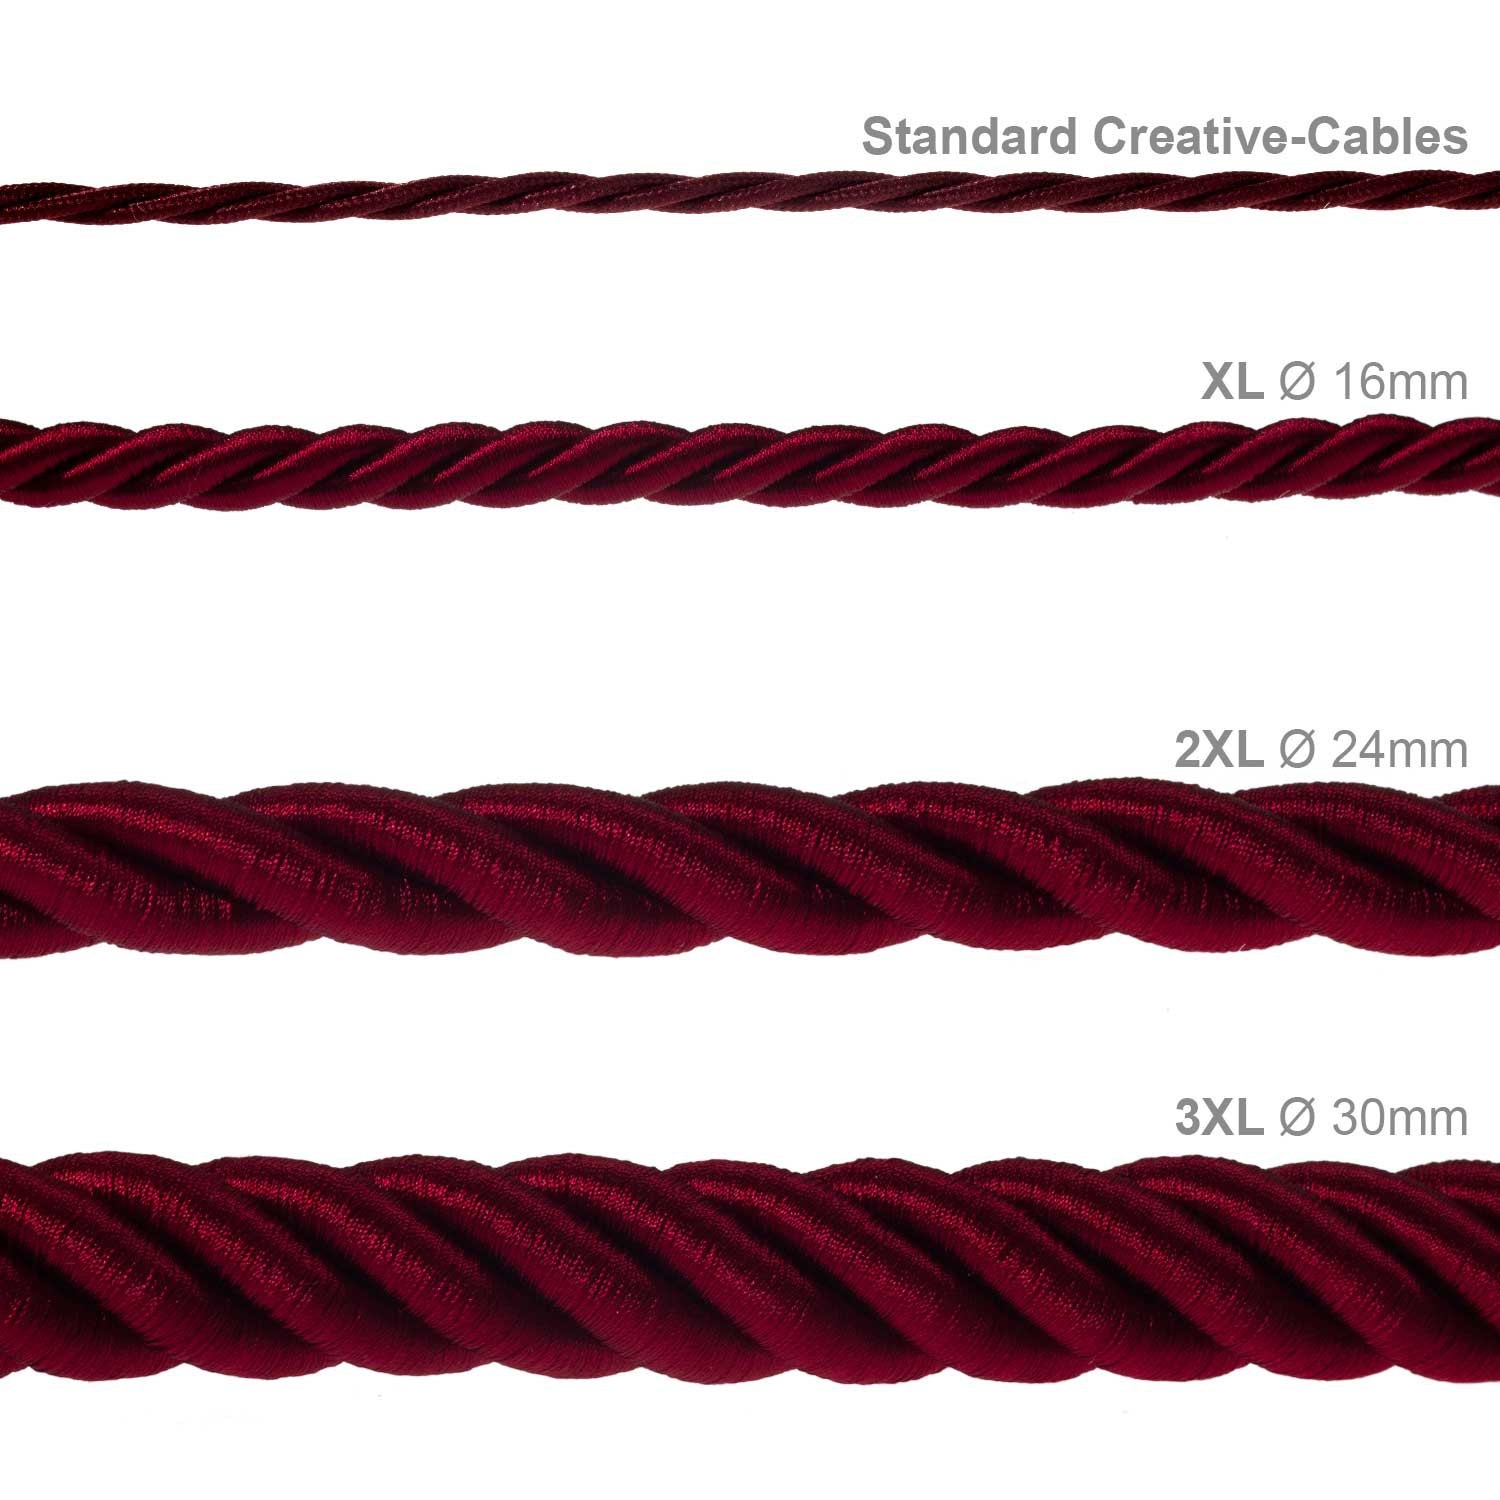 3XL Elektrický kabel 3x0,75 potažený lesklou tmavě bordovou textilií. Průměr 30 mm.